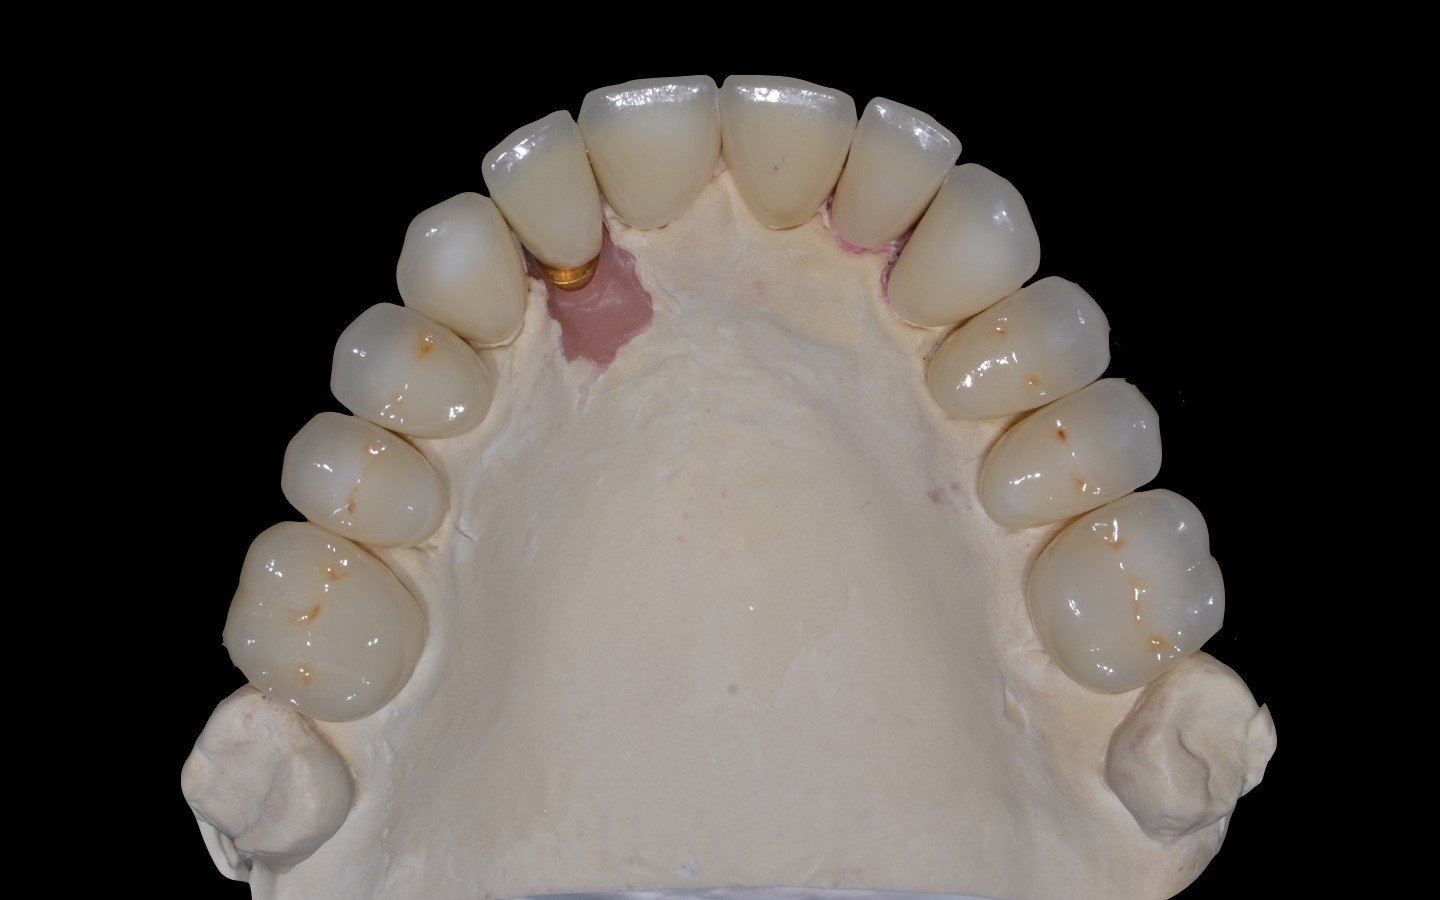 image21 - Reabilitação dento-alveolar com implante Arcsys, enxerto conjuntivo e substituto ósseo Nanosynt